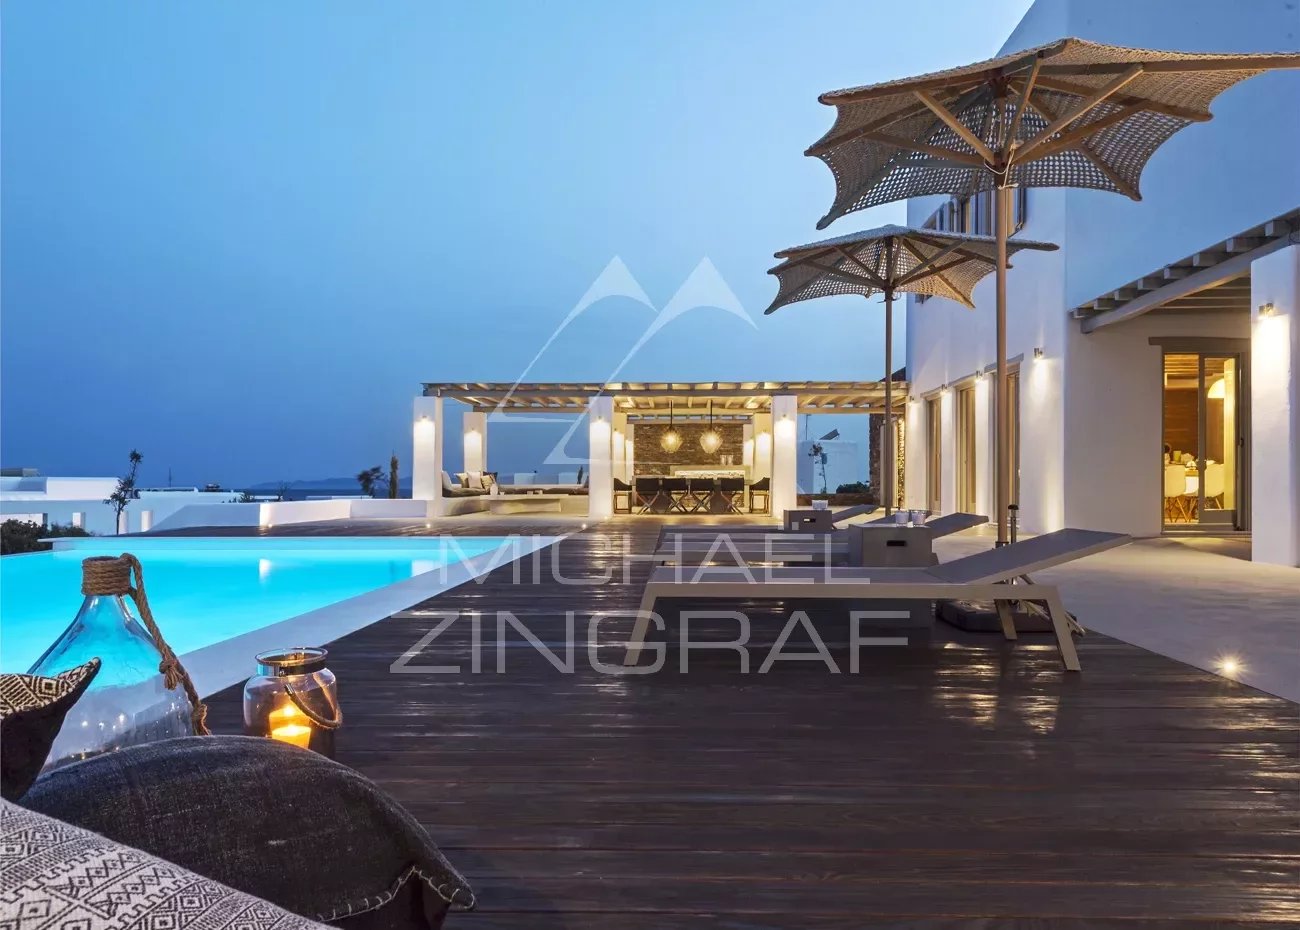 Premium-Villa in Lolantonis mit herrlichem Panoramablick über die Ägäis